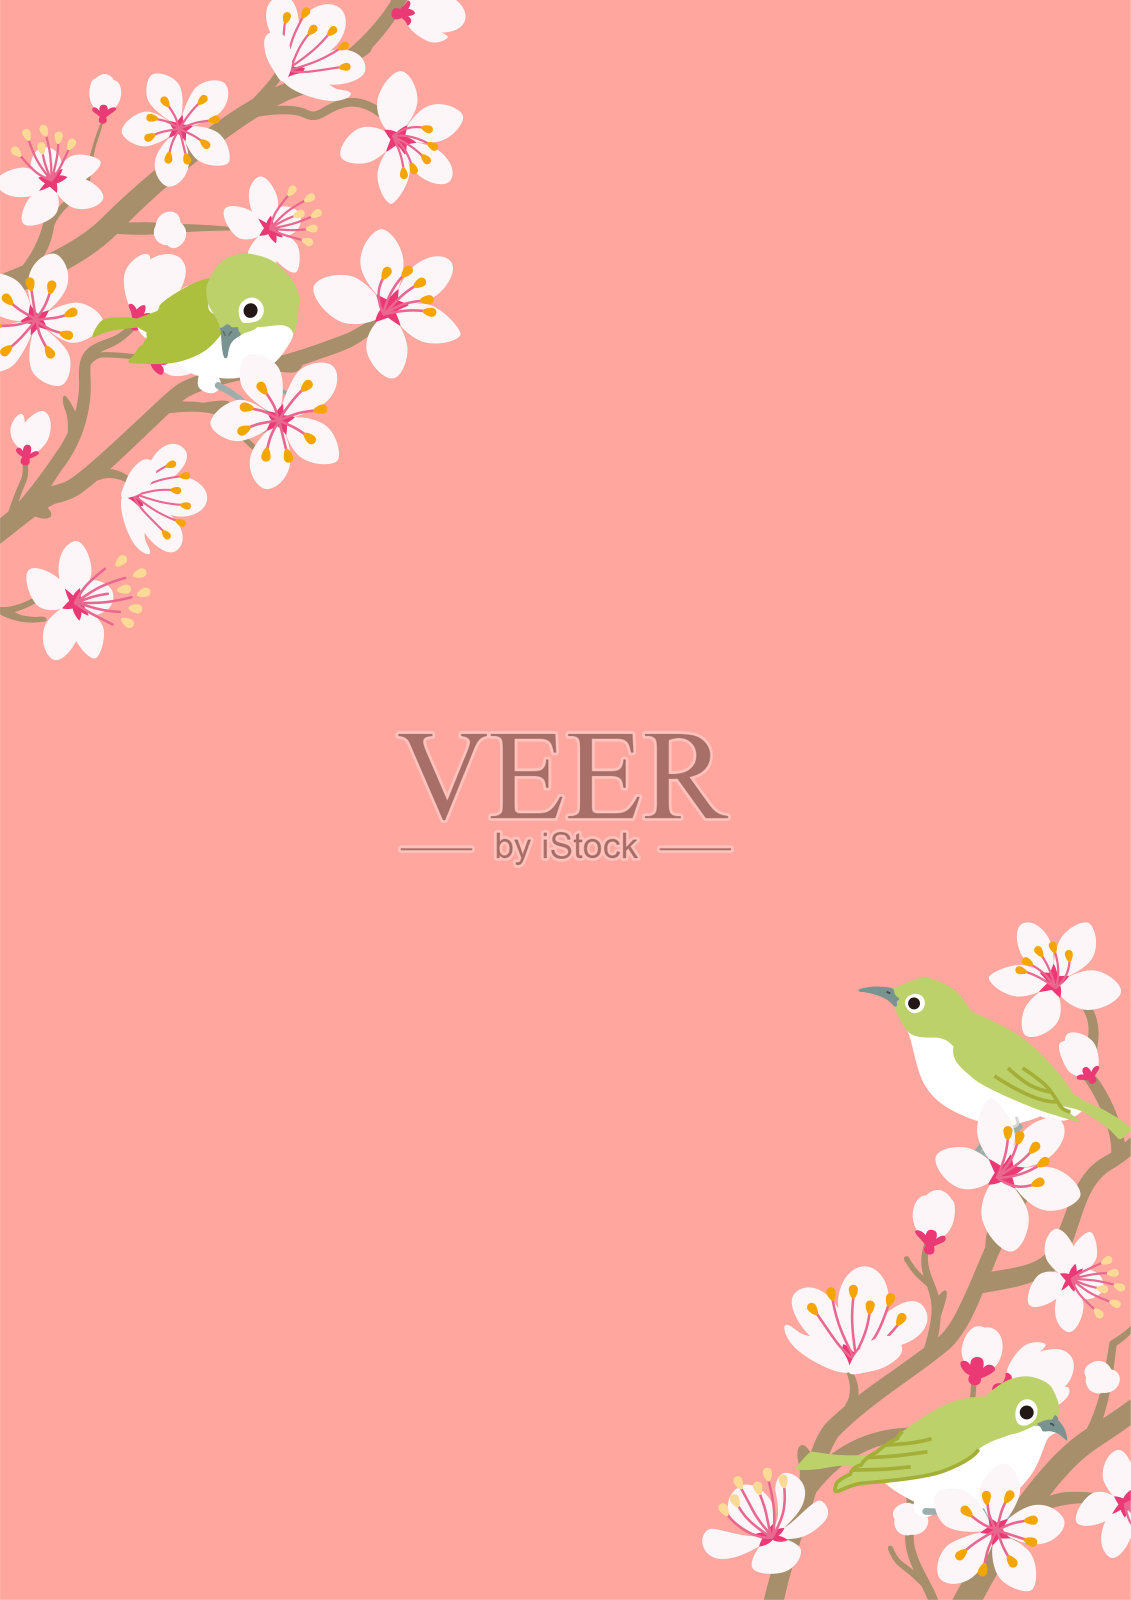 三只小鸟栖息在樱花枝上，垂直布置插画图片素材